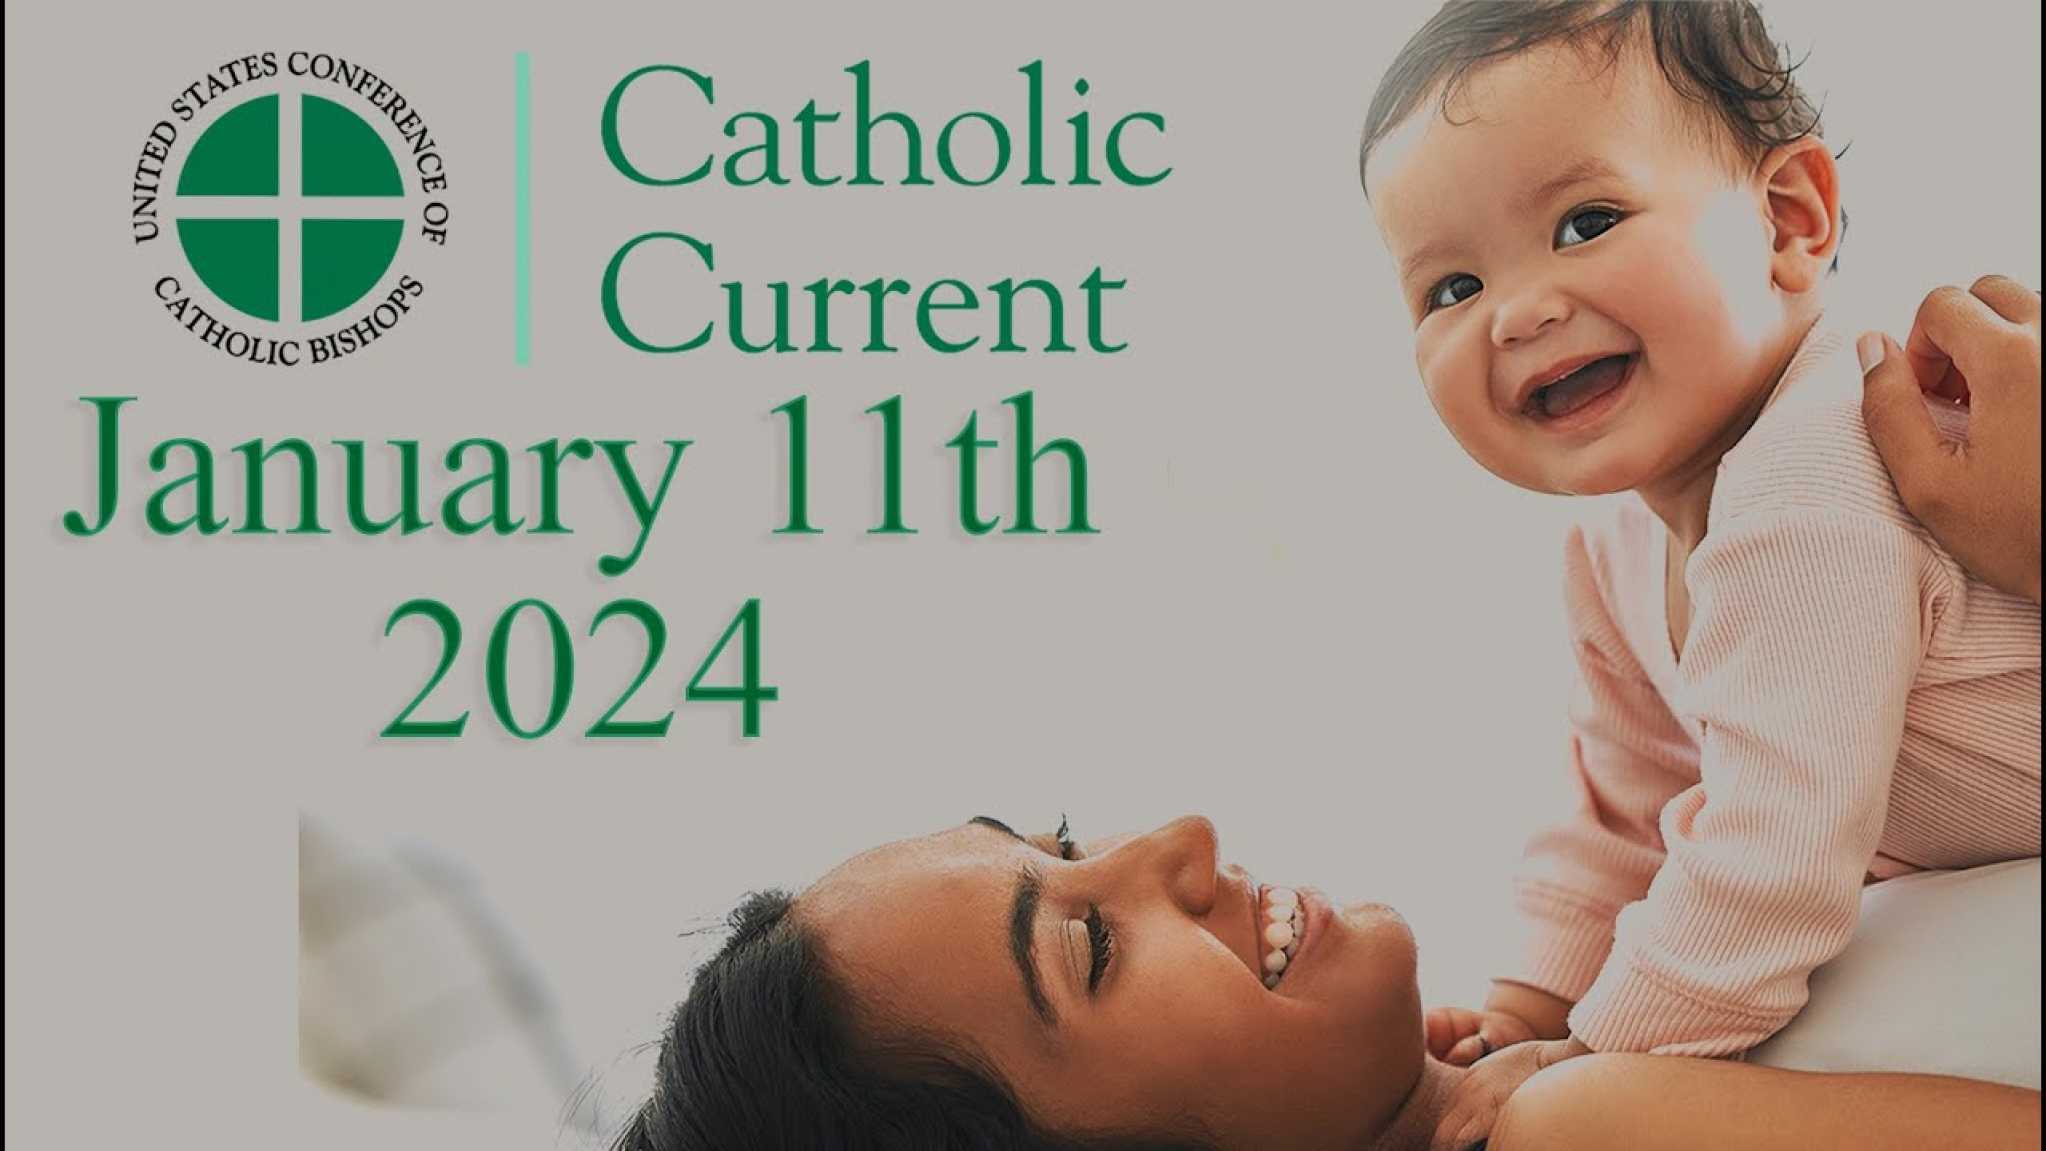 Catholic Current This Week’s Catholic Current 9 Days for Life Novena